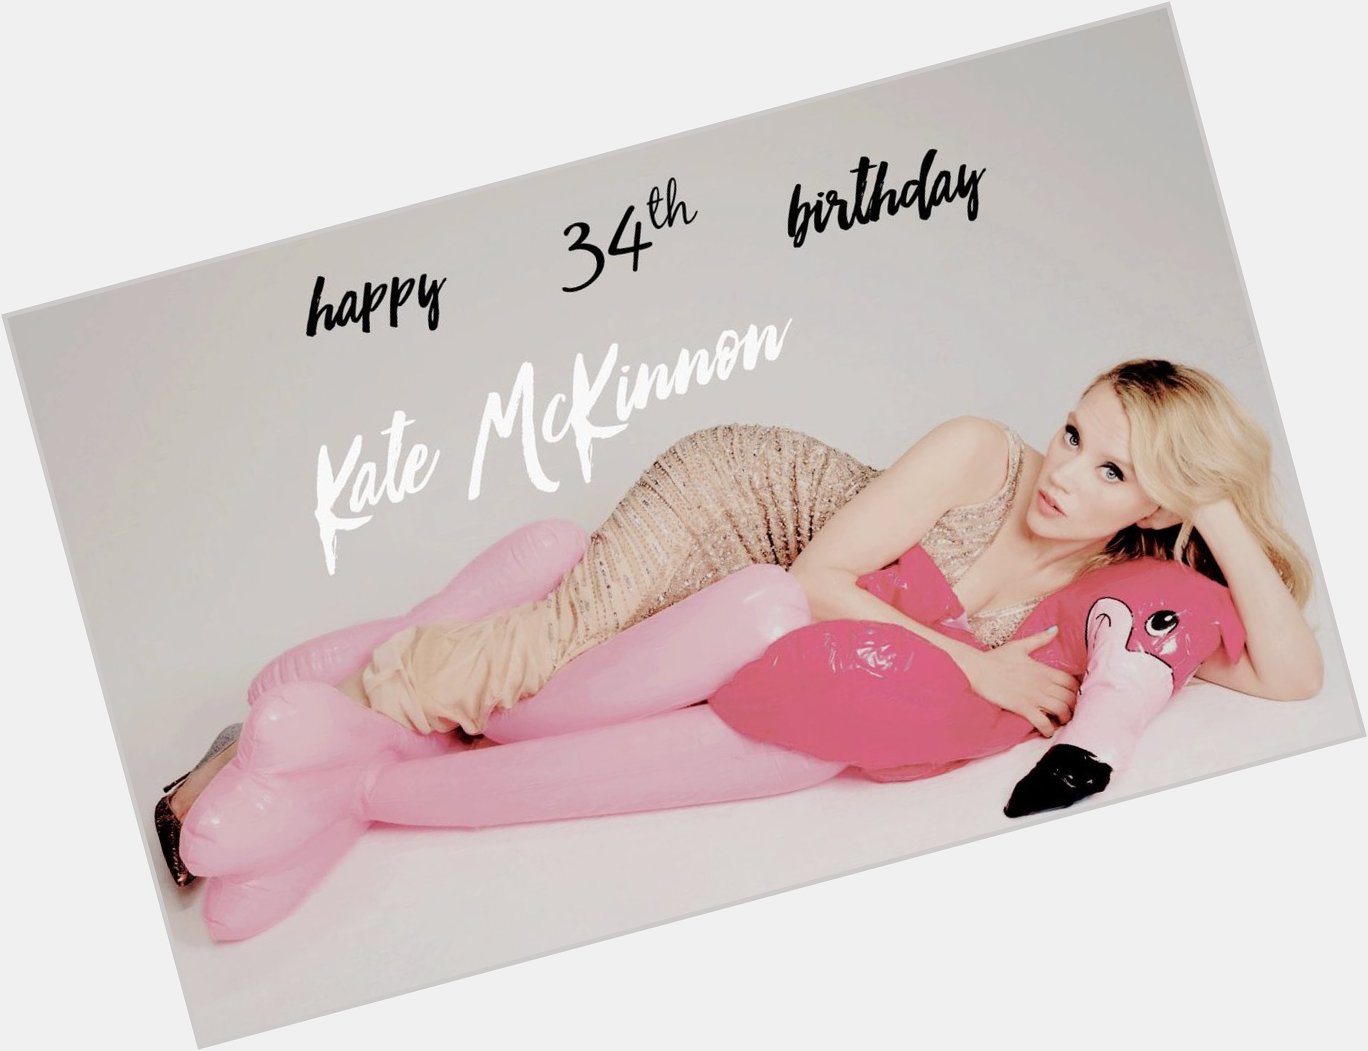 Happy Birthday to Kate McKinnon! 